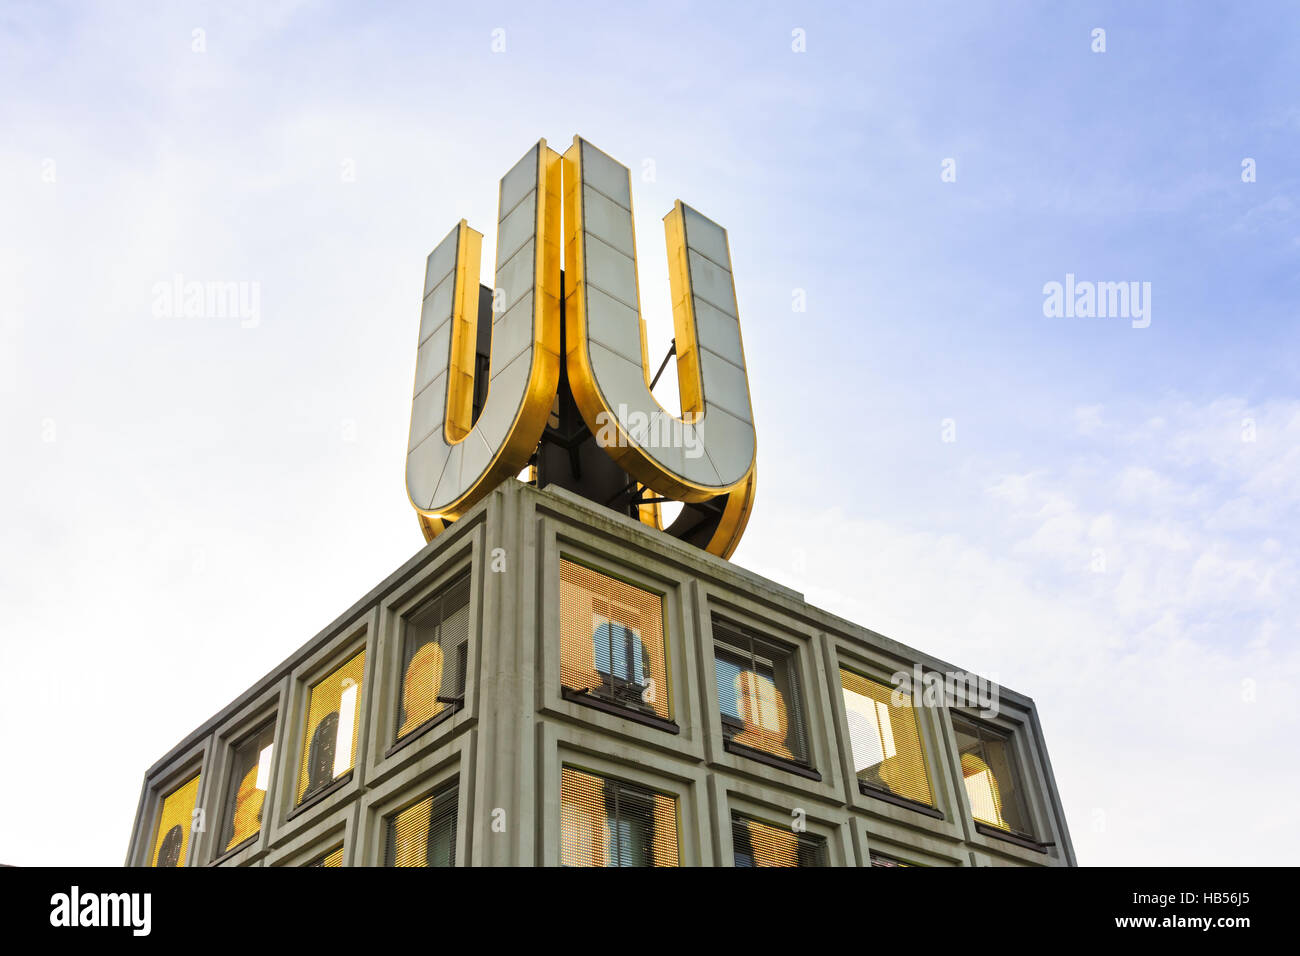 U-tour ou Dortmunder U avec 'kicker' installation vidéo, célèbre signe sur haut de l'ancienne brasserie Dortmunder Union européenne, Dortmund, Allemagne Banque D'Images